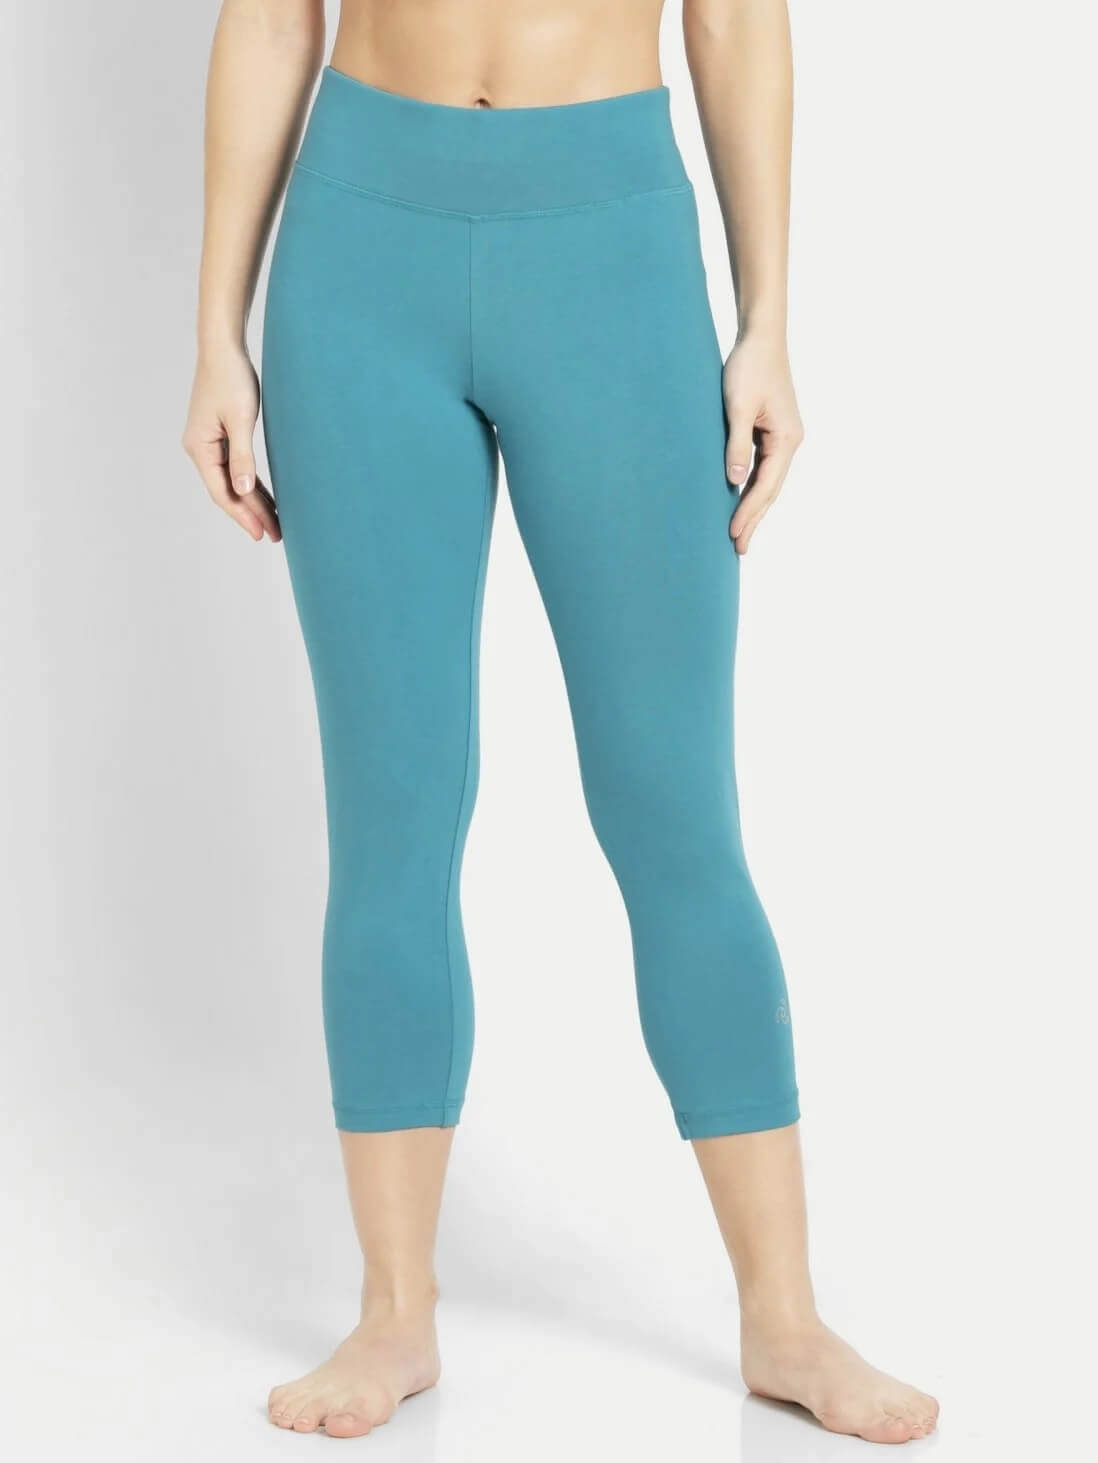 Buy Bycc Bynn Womens Plus Size Capri Leggings Soft Stretch Cropped Pants  Capris Online at desertcartOMAN